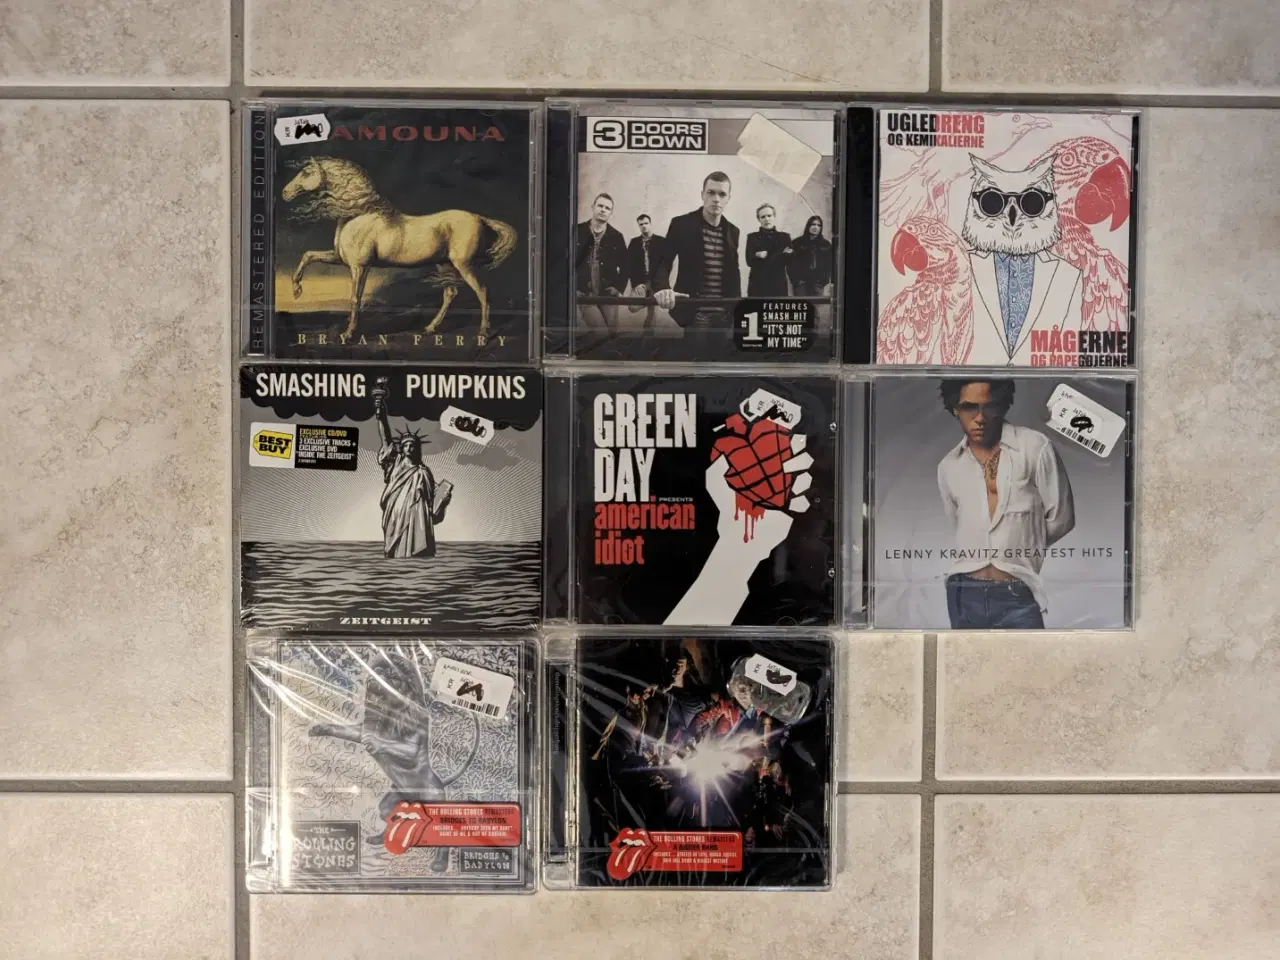 Billede 1 - 8 spritnye rock CD'er i ubrudt folie